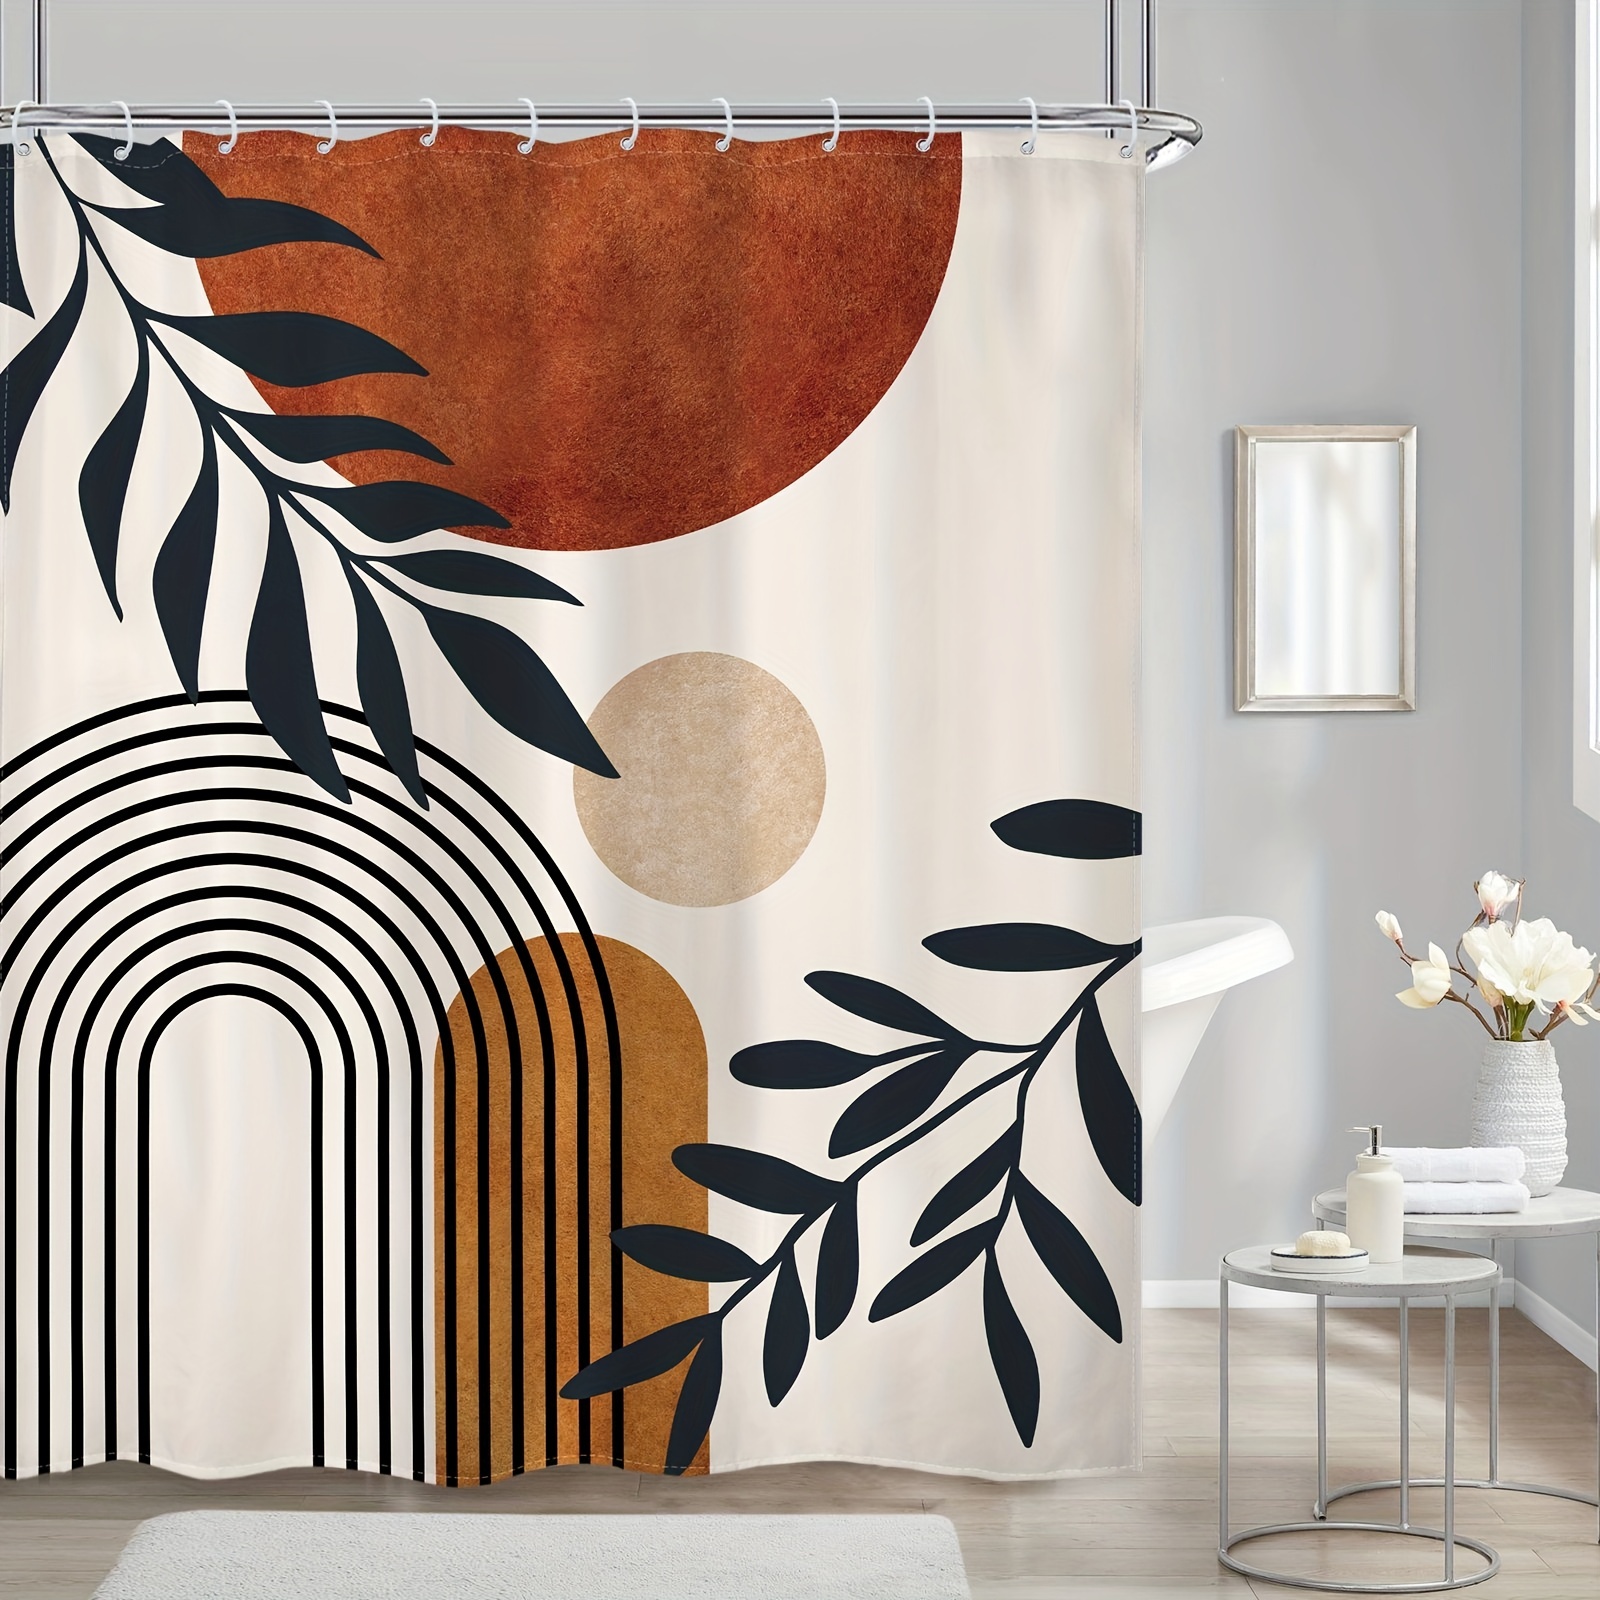 Orange Colour Block Fabric, Wallpaper and Home Decor